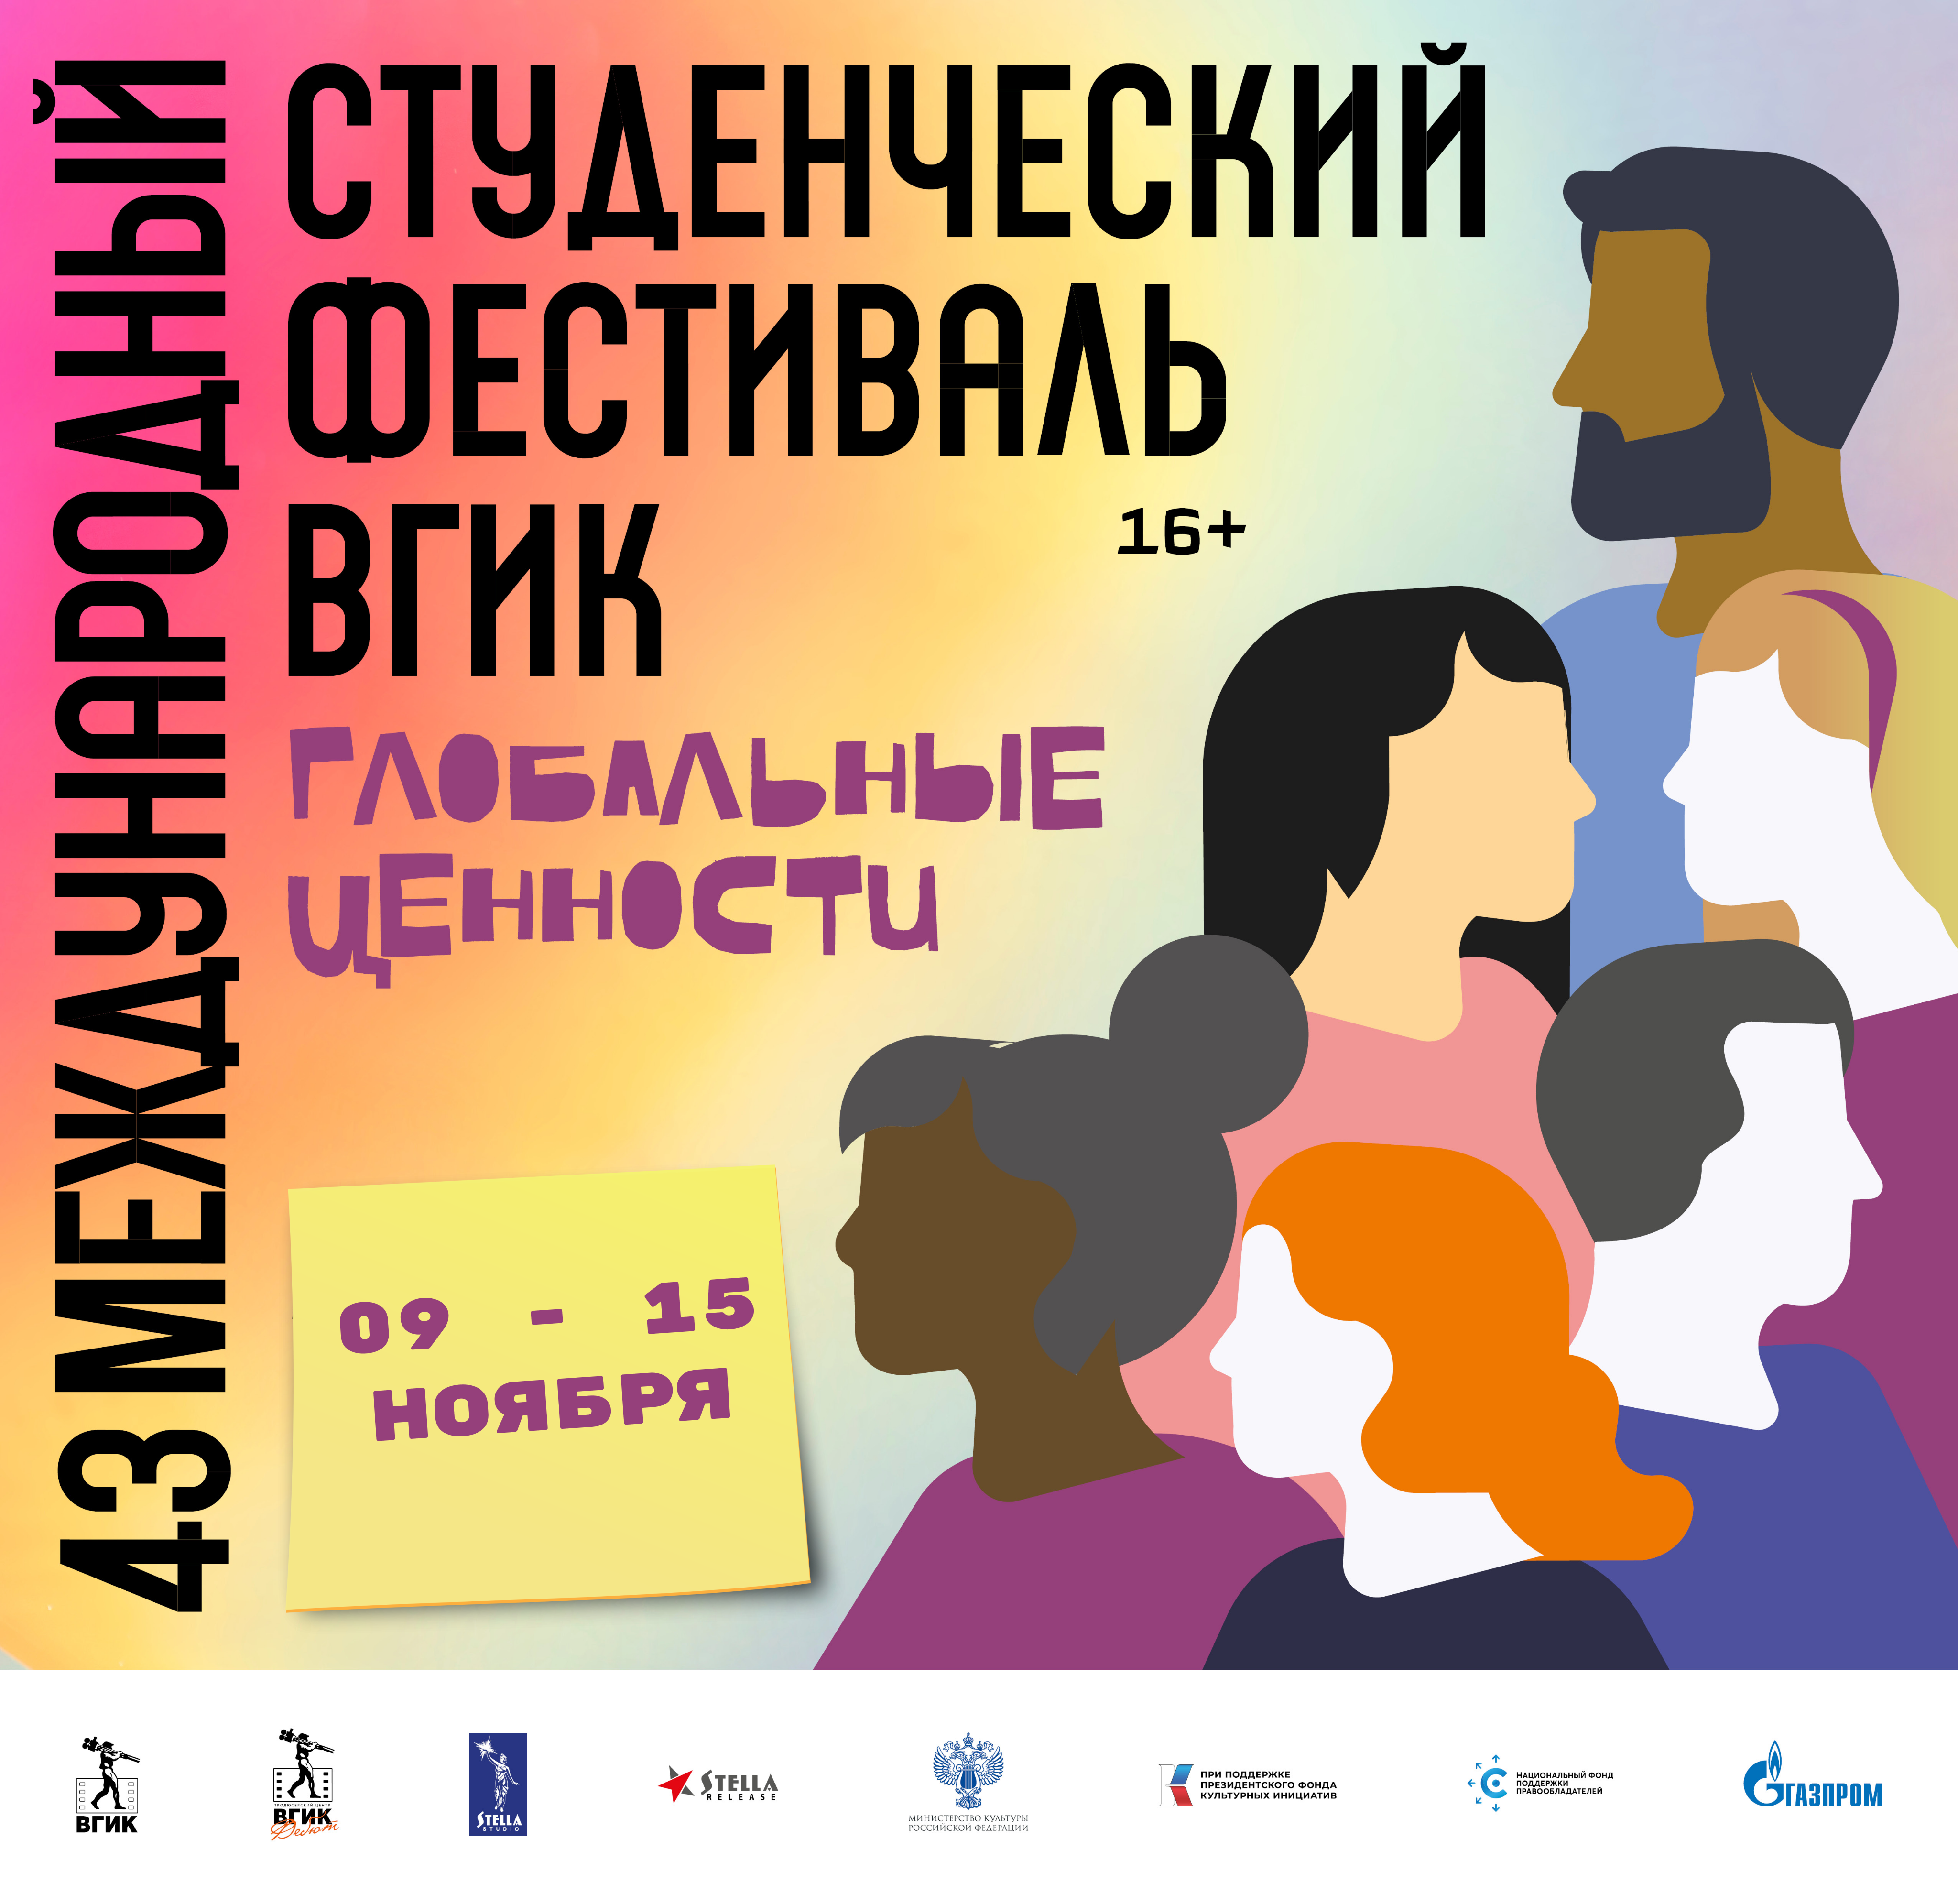 43 Международный студенческий фестиваль ВГИК: Москва вновь становится центром молодежного кино